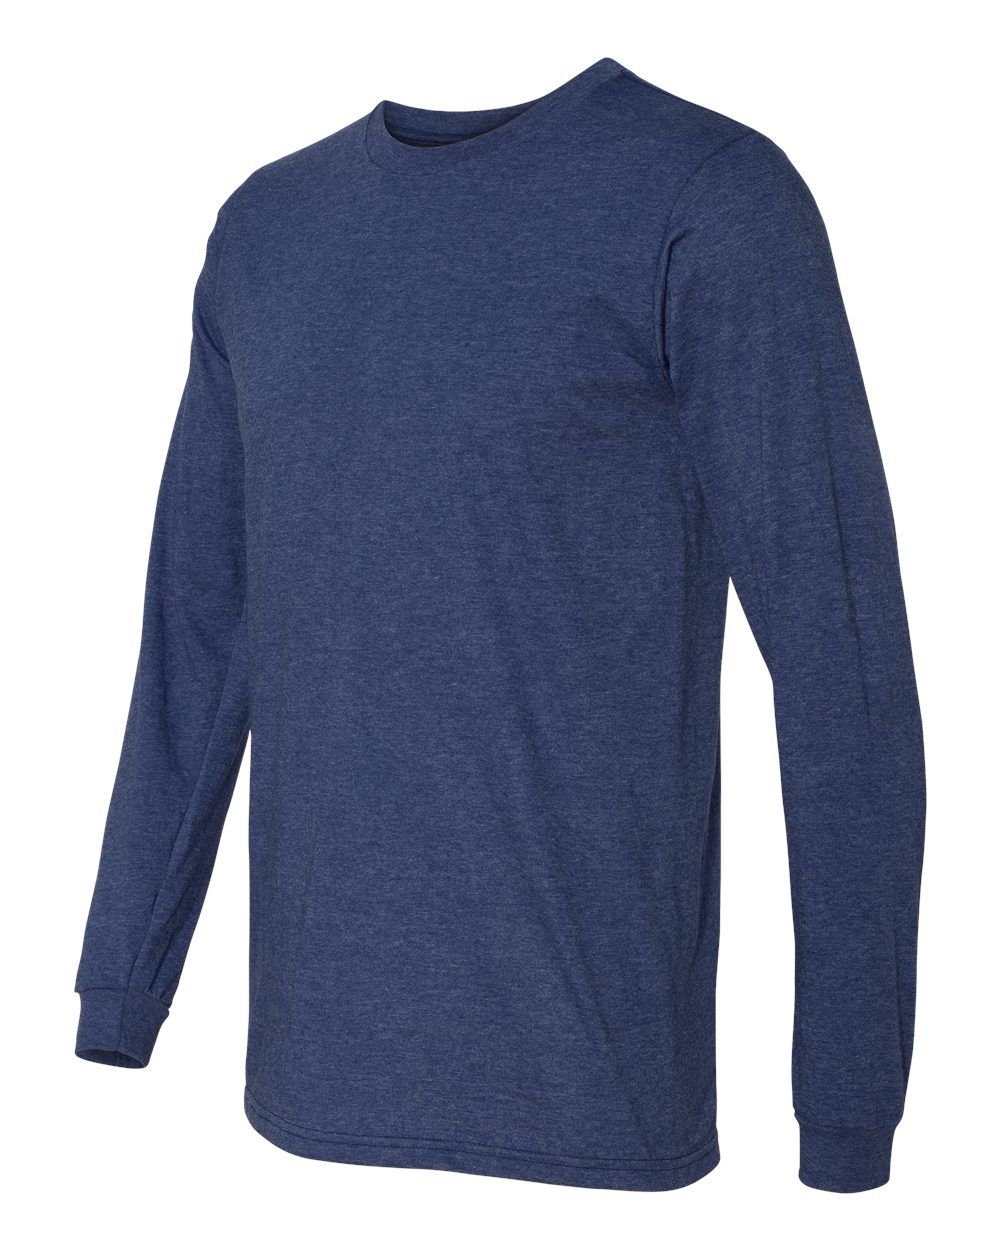 Lightweight Long Sleeve T-Shirt - 949-Anvil